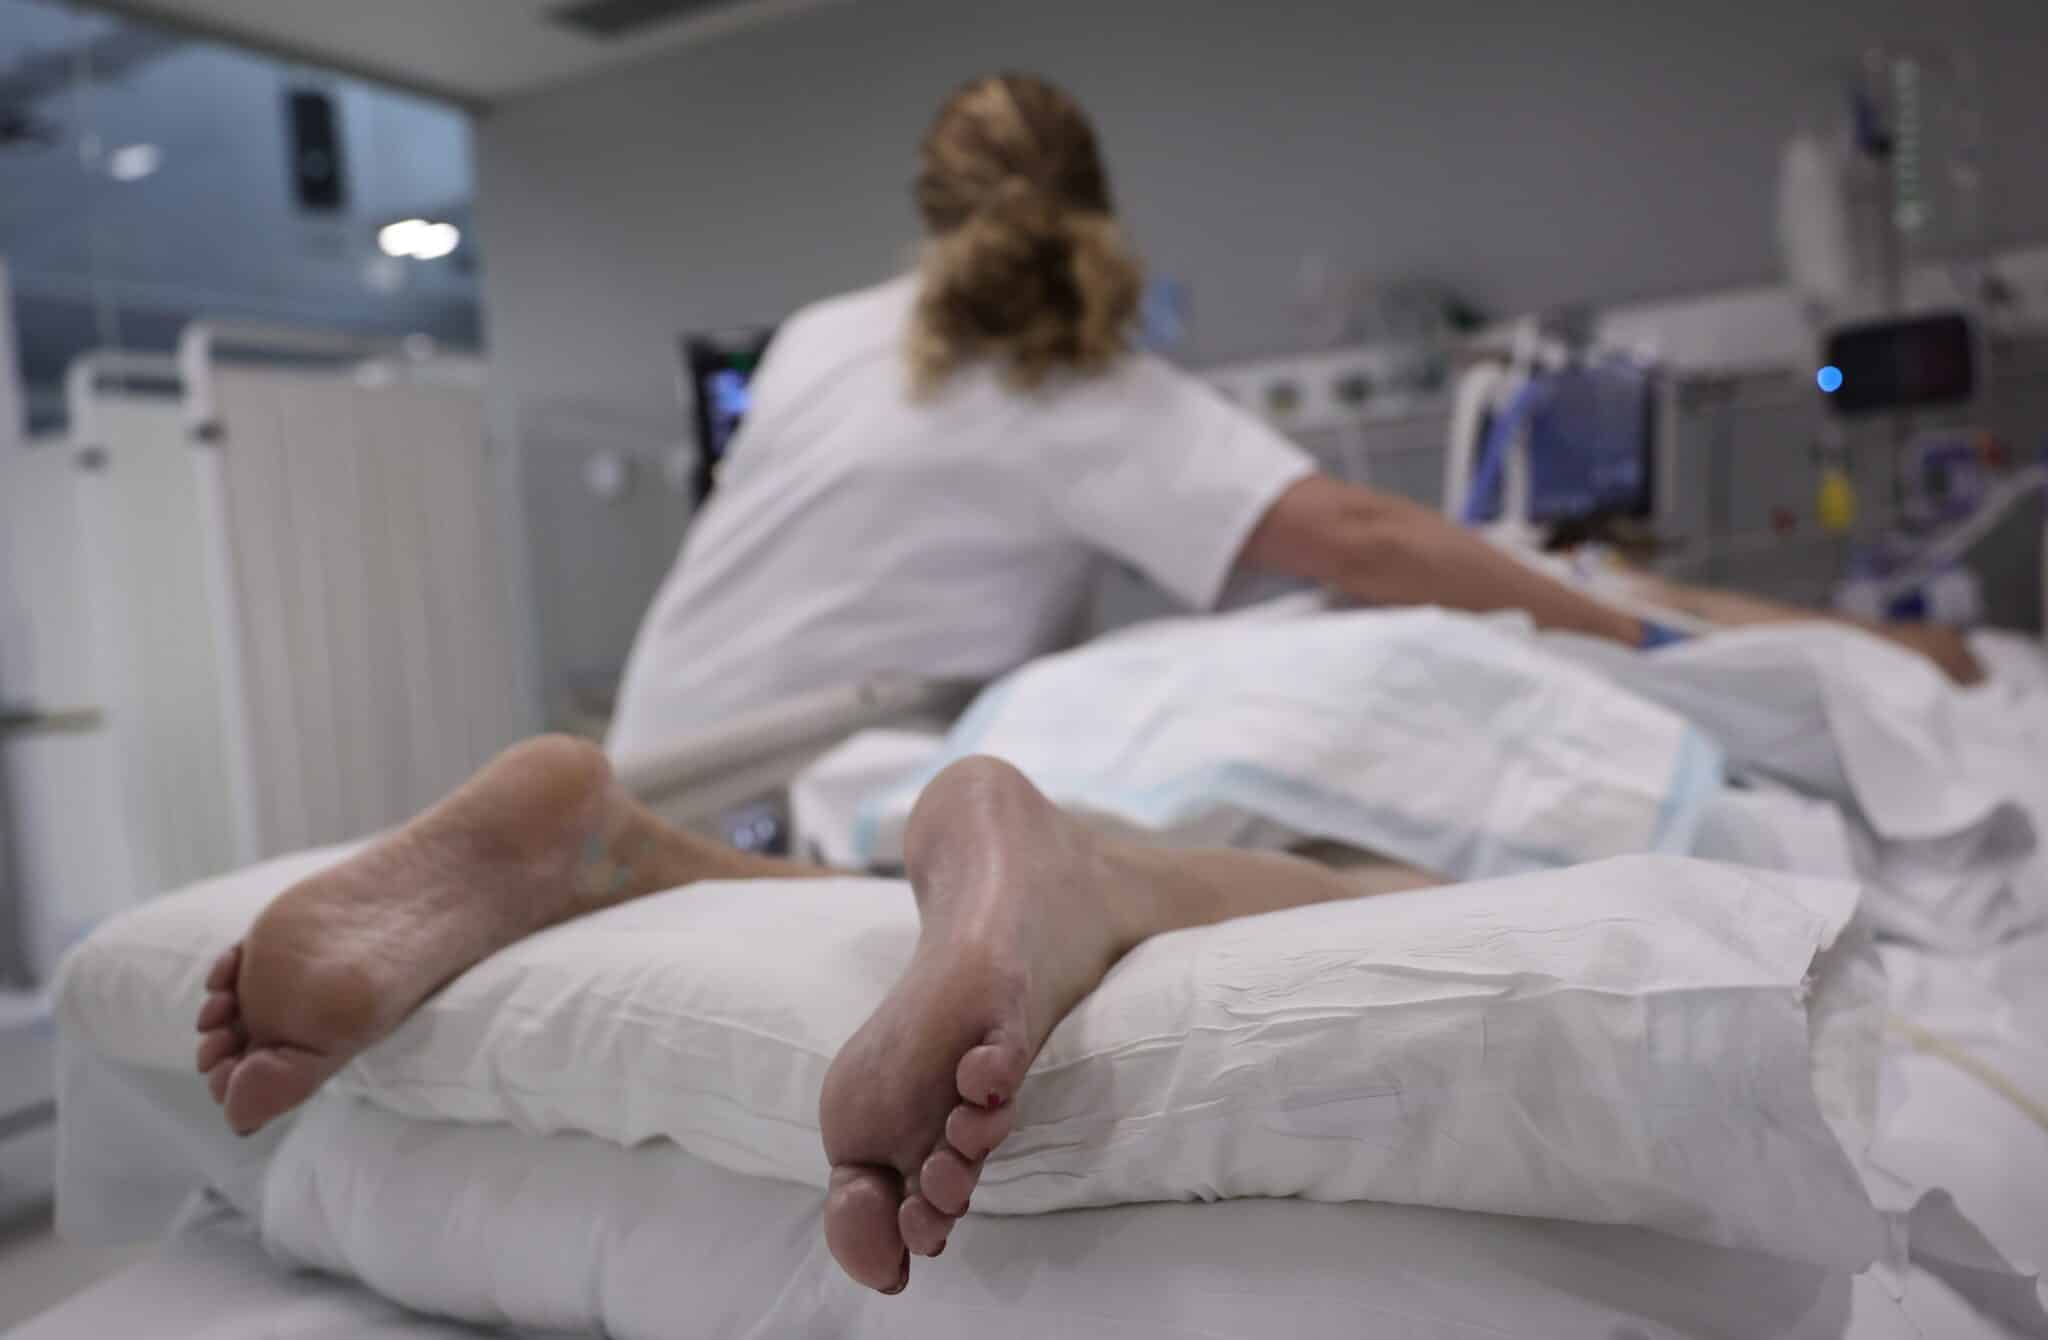 Una enfermera realiza una ecografía a una paciente recostada boca abajo en la UCI del Hospital Enfermera Isabel Zendal.